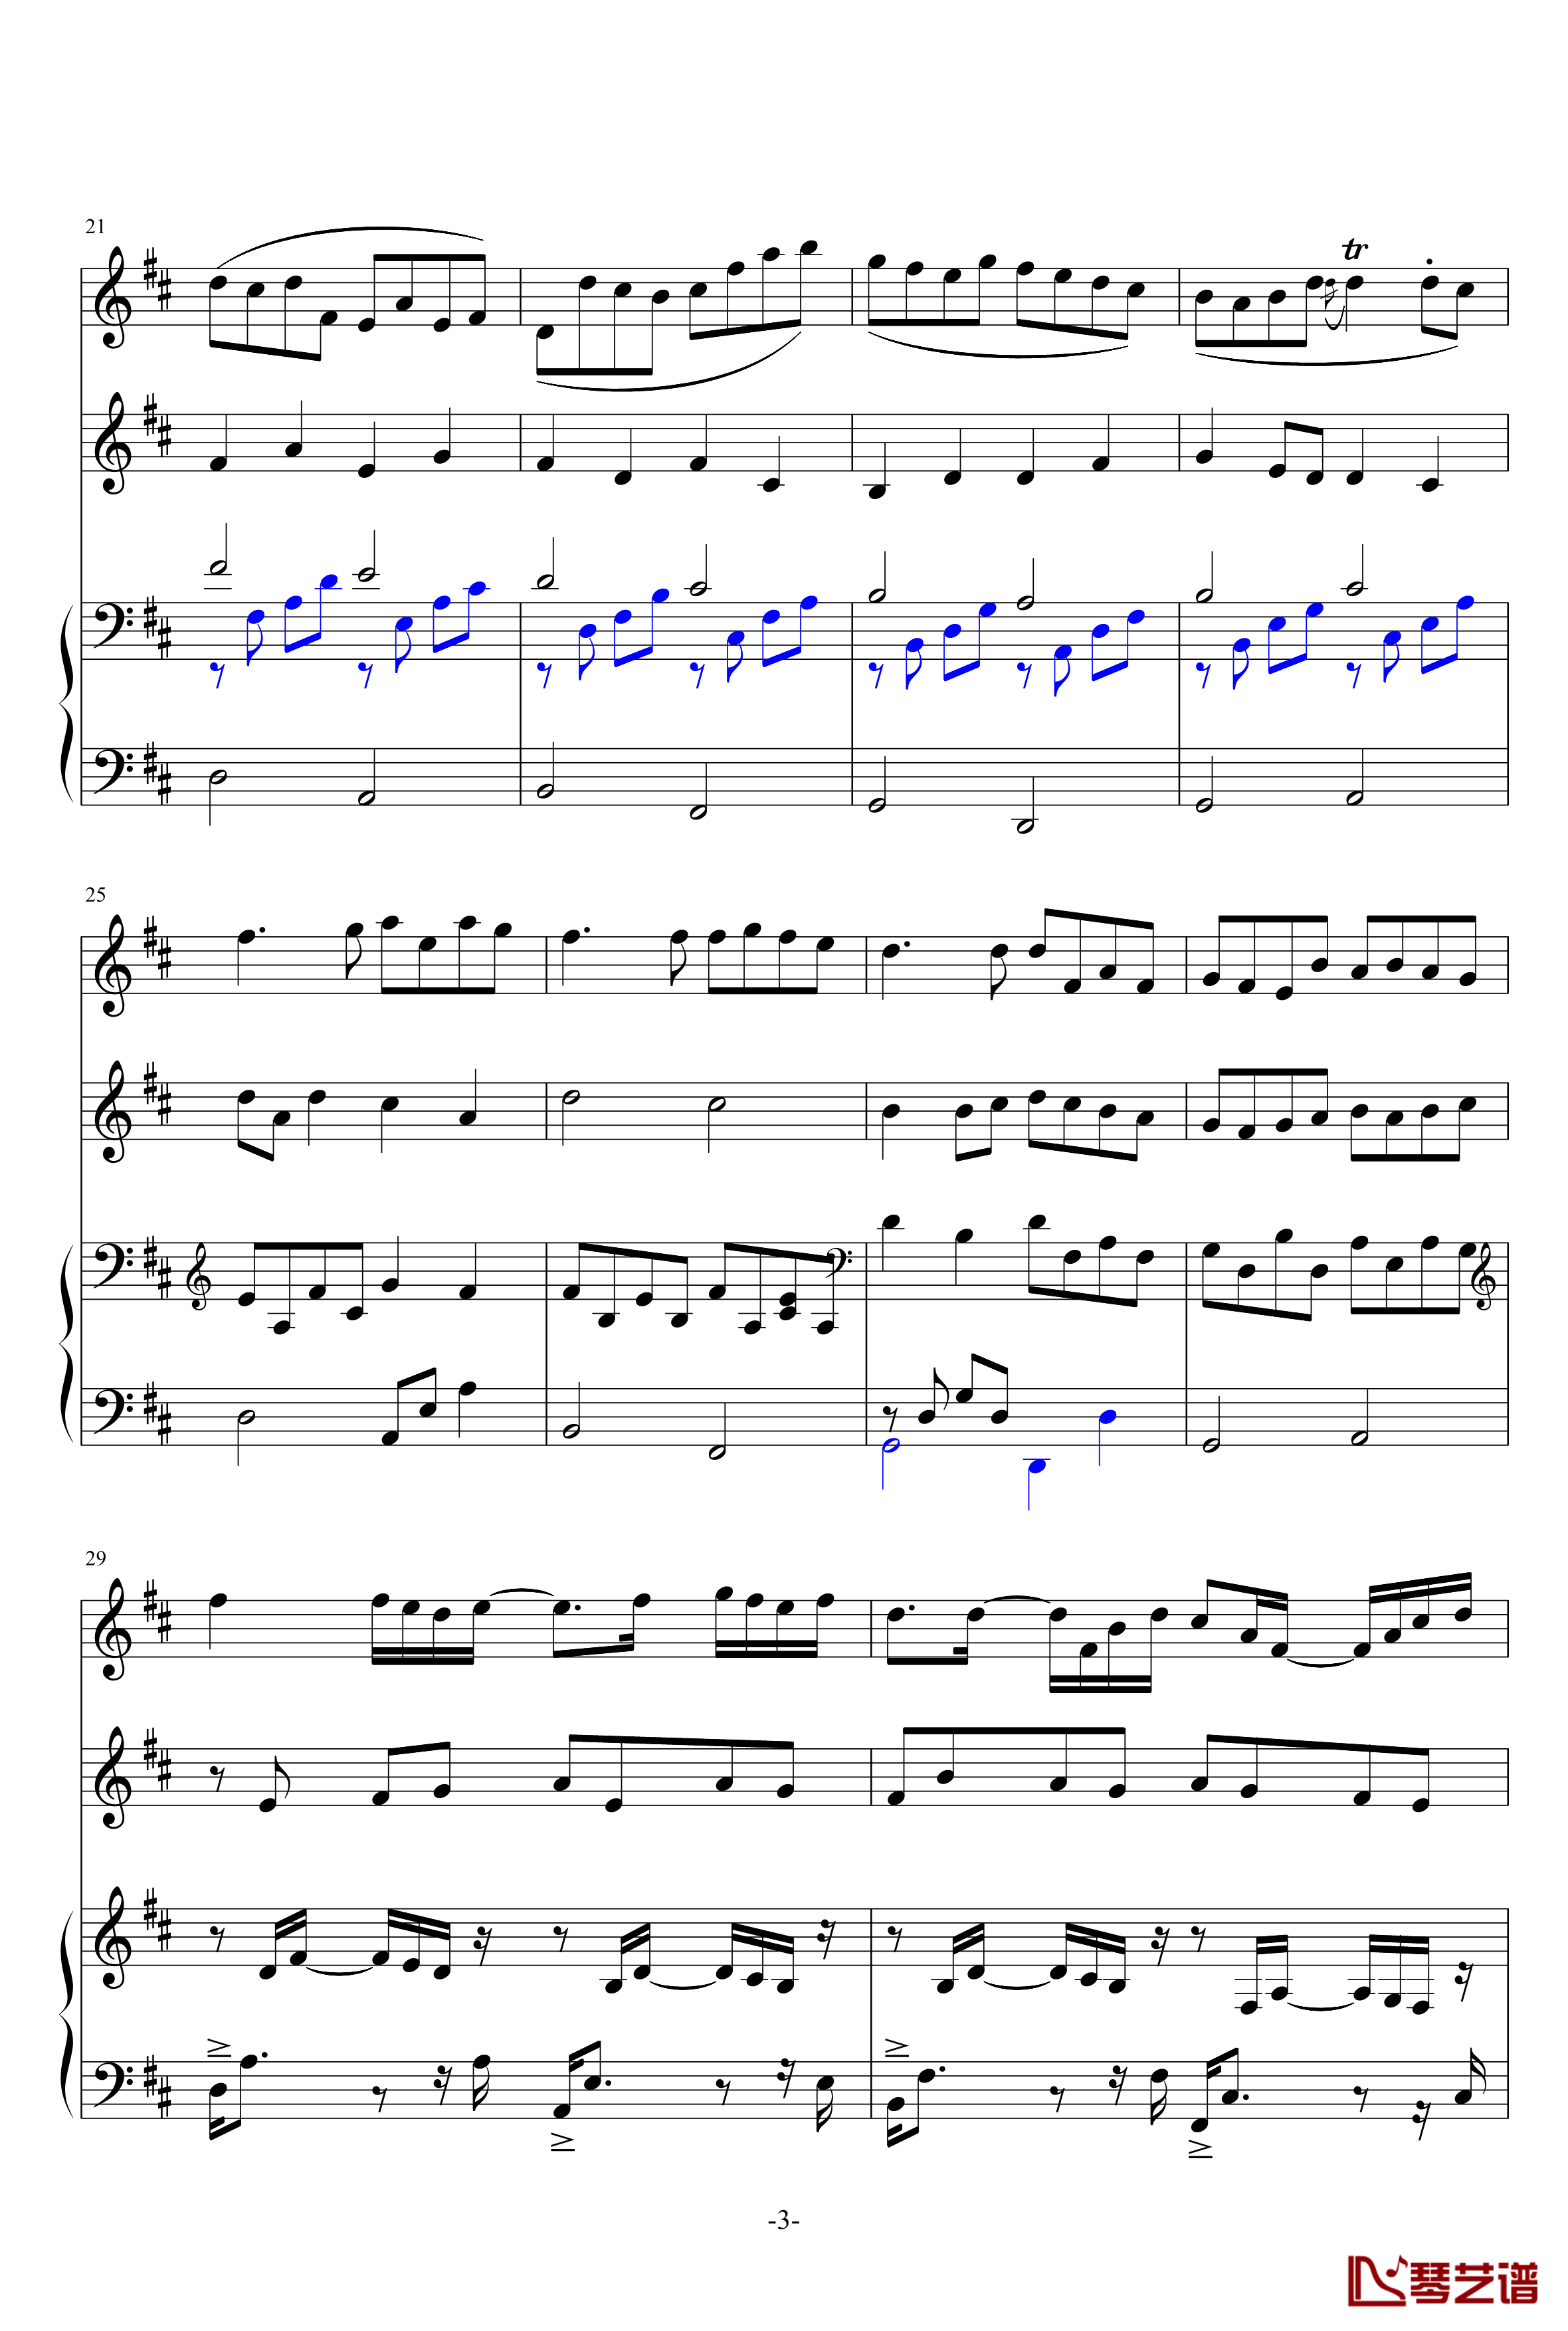 卡农提琴钢琴伴奏版钢琴谱-帕赫贝尔-Pachelbel3